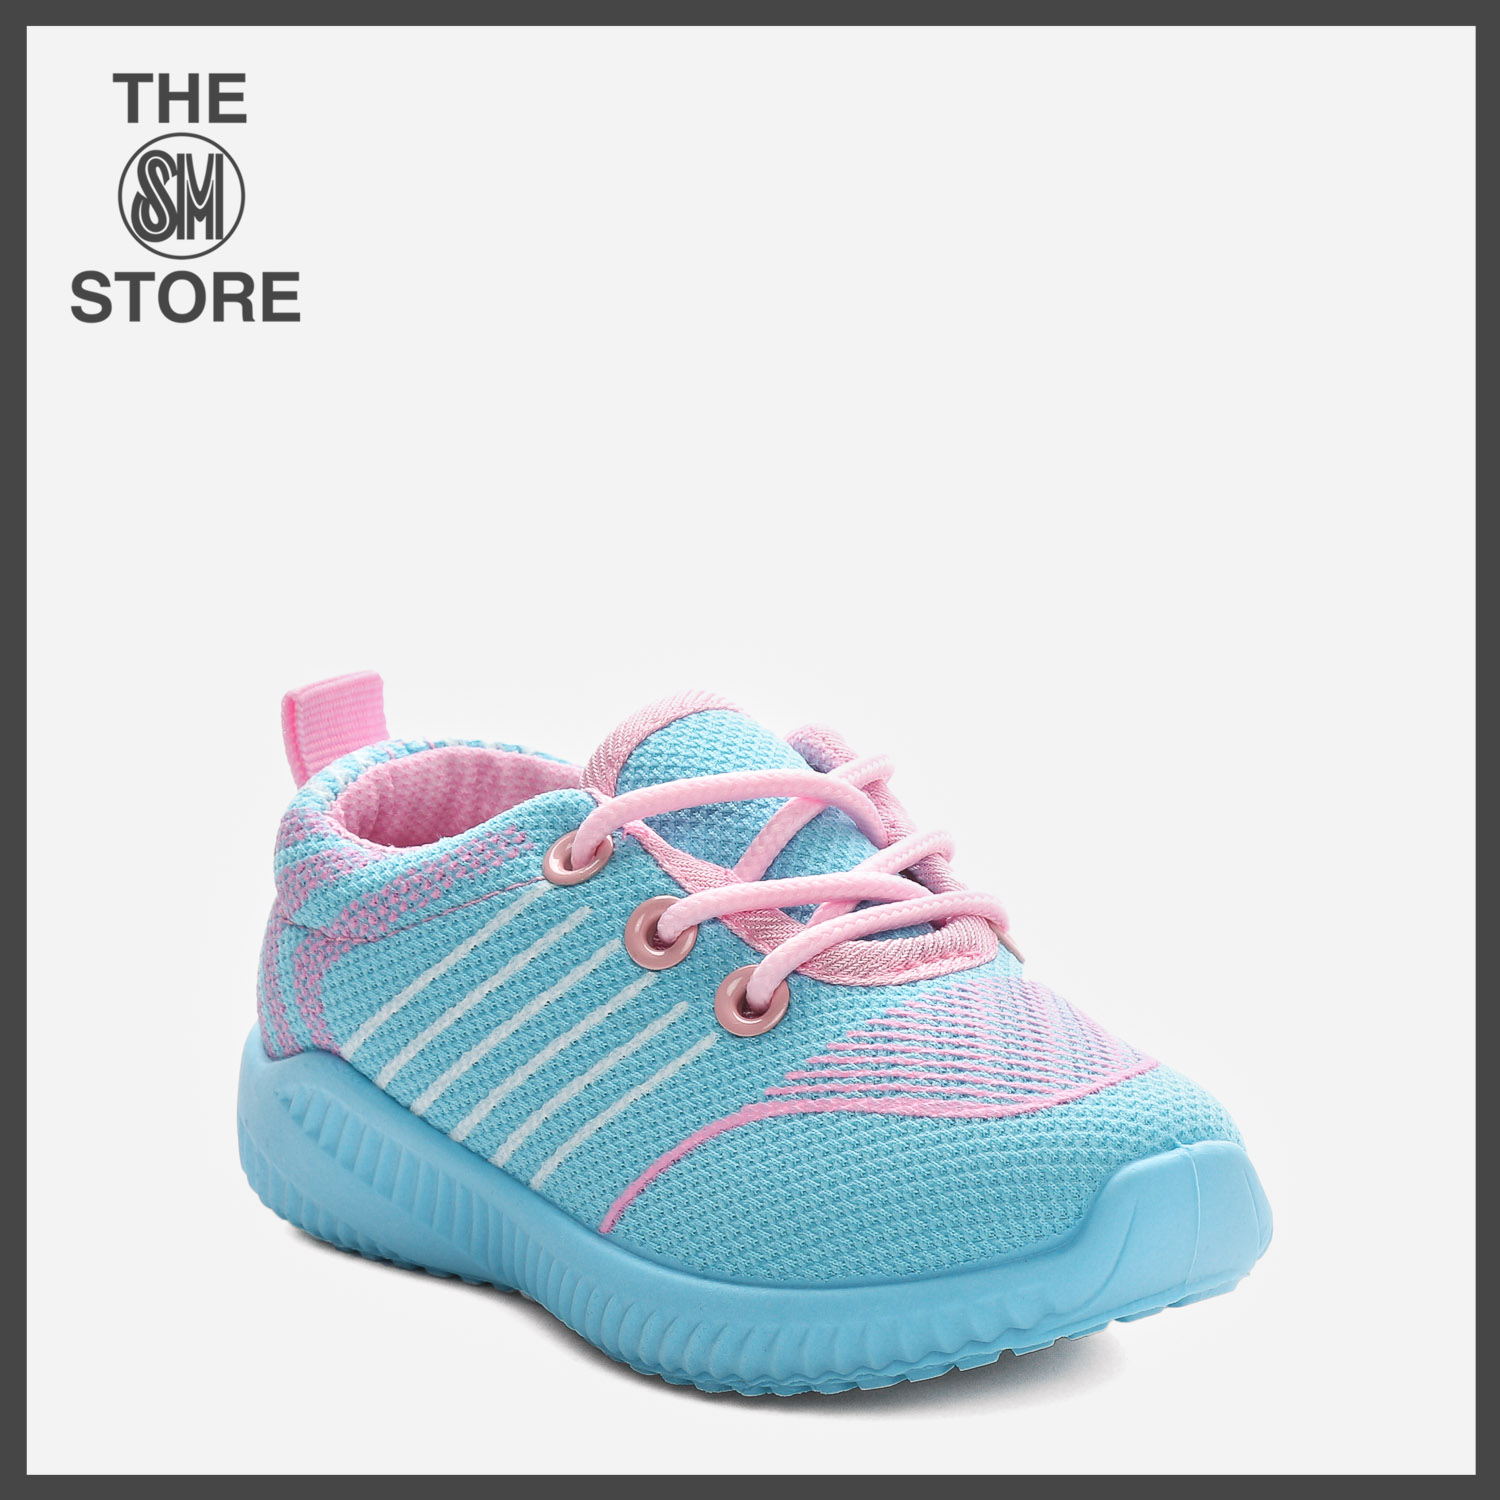 aqua shoes sm department store 2018